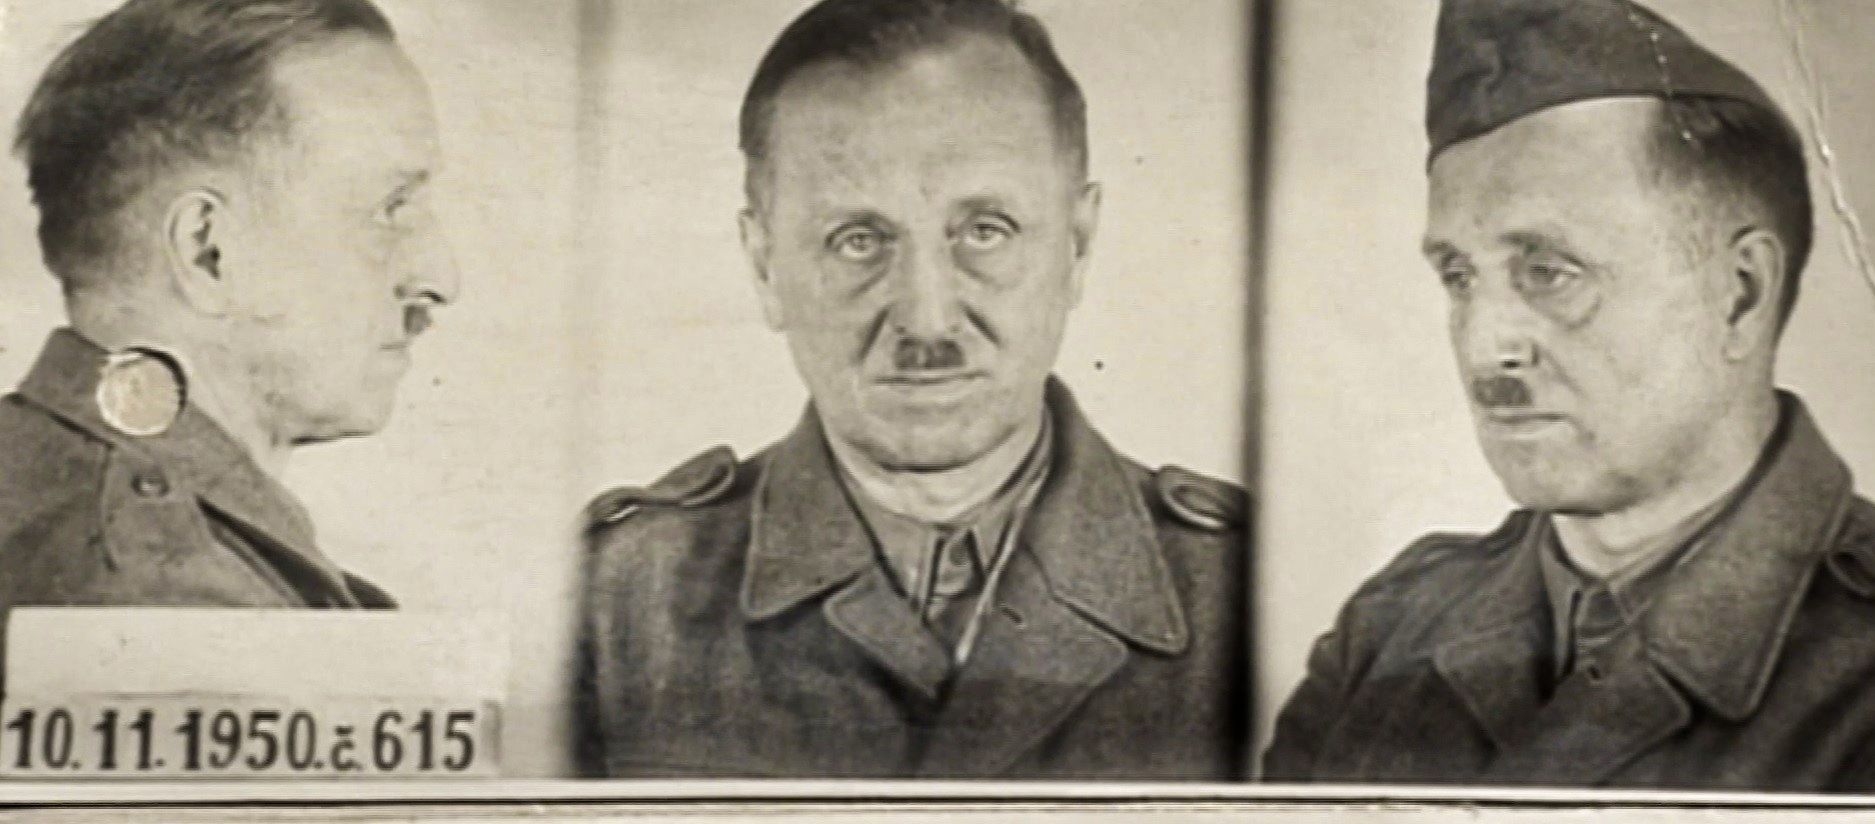 Karel Kutlvašr, vězeňská fotografie